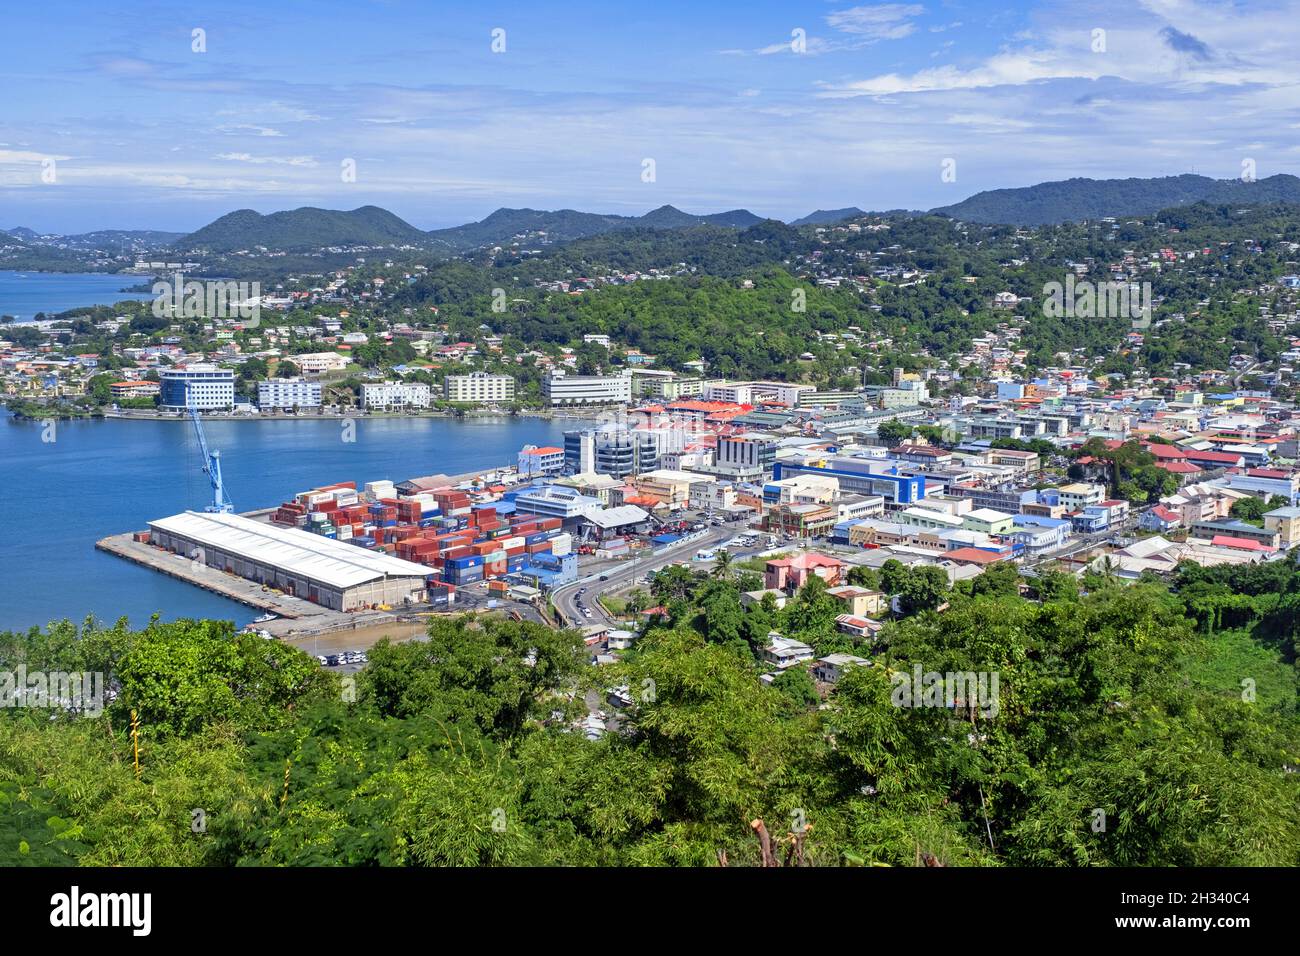 Vue sur le port / port de Castries, capitale de l'île Sainte-Lucie dans la mer des Caraïbes Banque D'Images